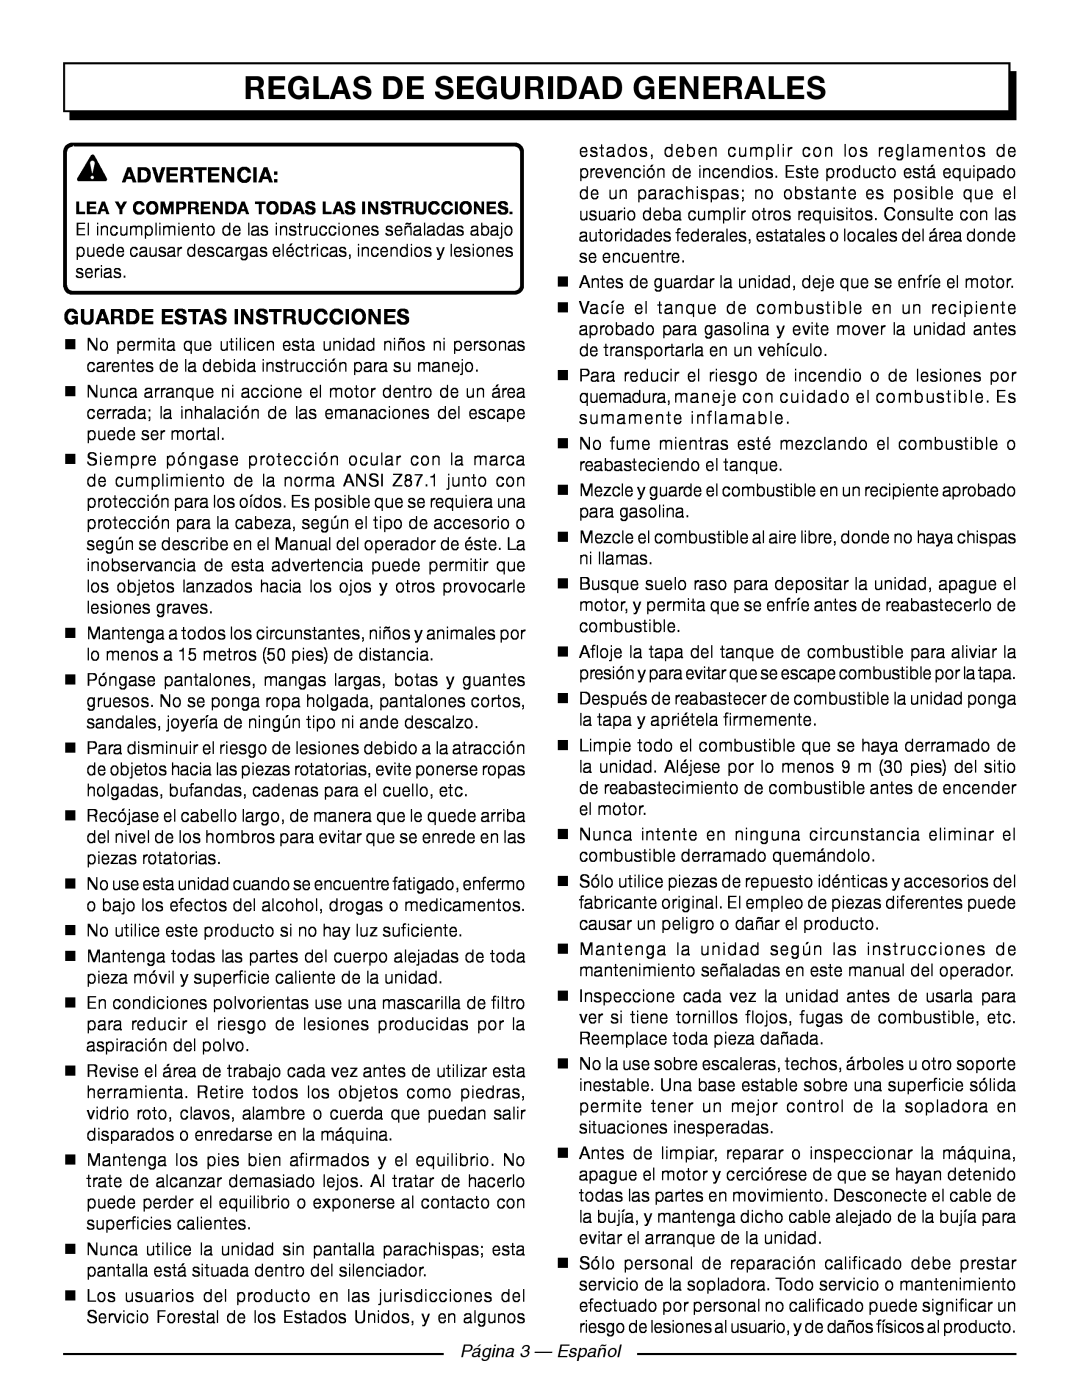 Homelite UT09521 Reglas De Seguridad Generales, Advertencia, Guarde Estas Instrucciones, Página 3 - Español 